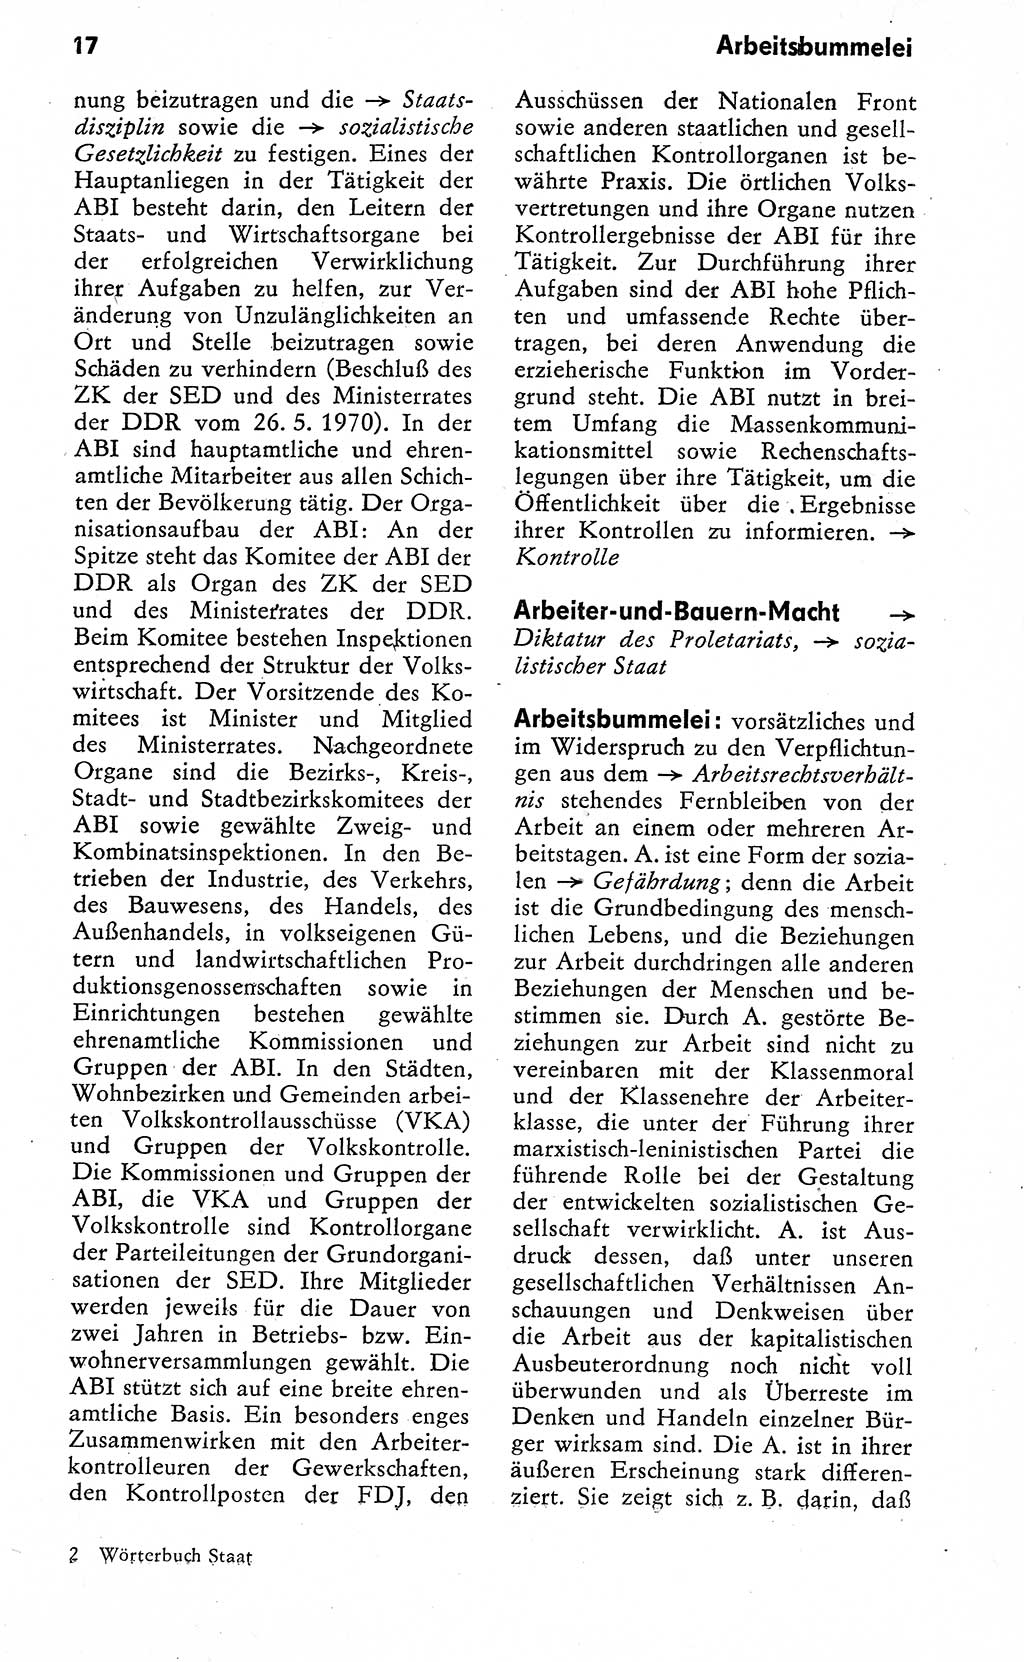 Wörterbuch zum sozialistischen Staat [Deutsche Demokratische Republik (DDR)] 1974, Seite 17 (Wb. soz. St. DDR 1974, S. 17)